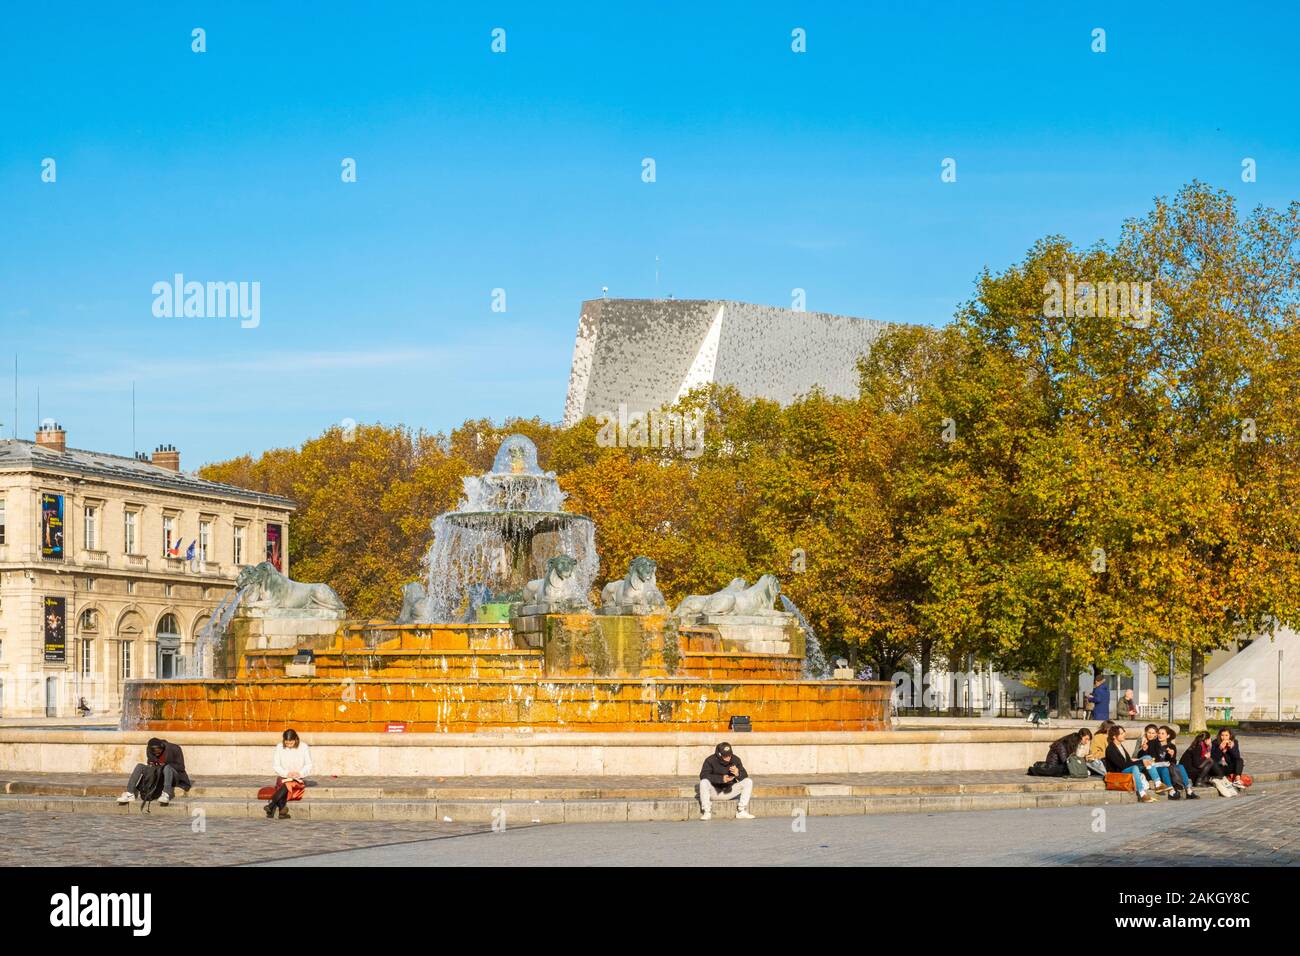 France, Paris, Parc de la Villette in autumn Stock Photo